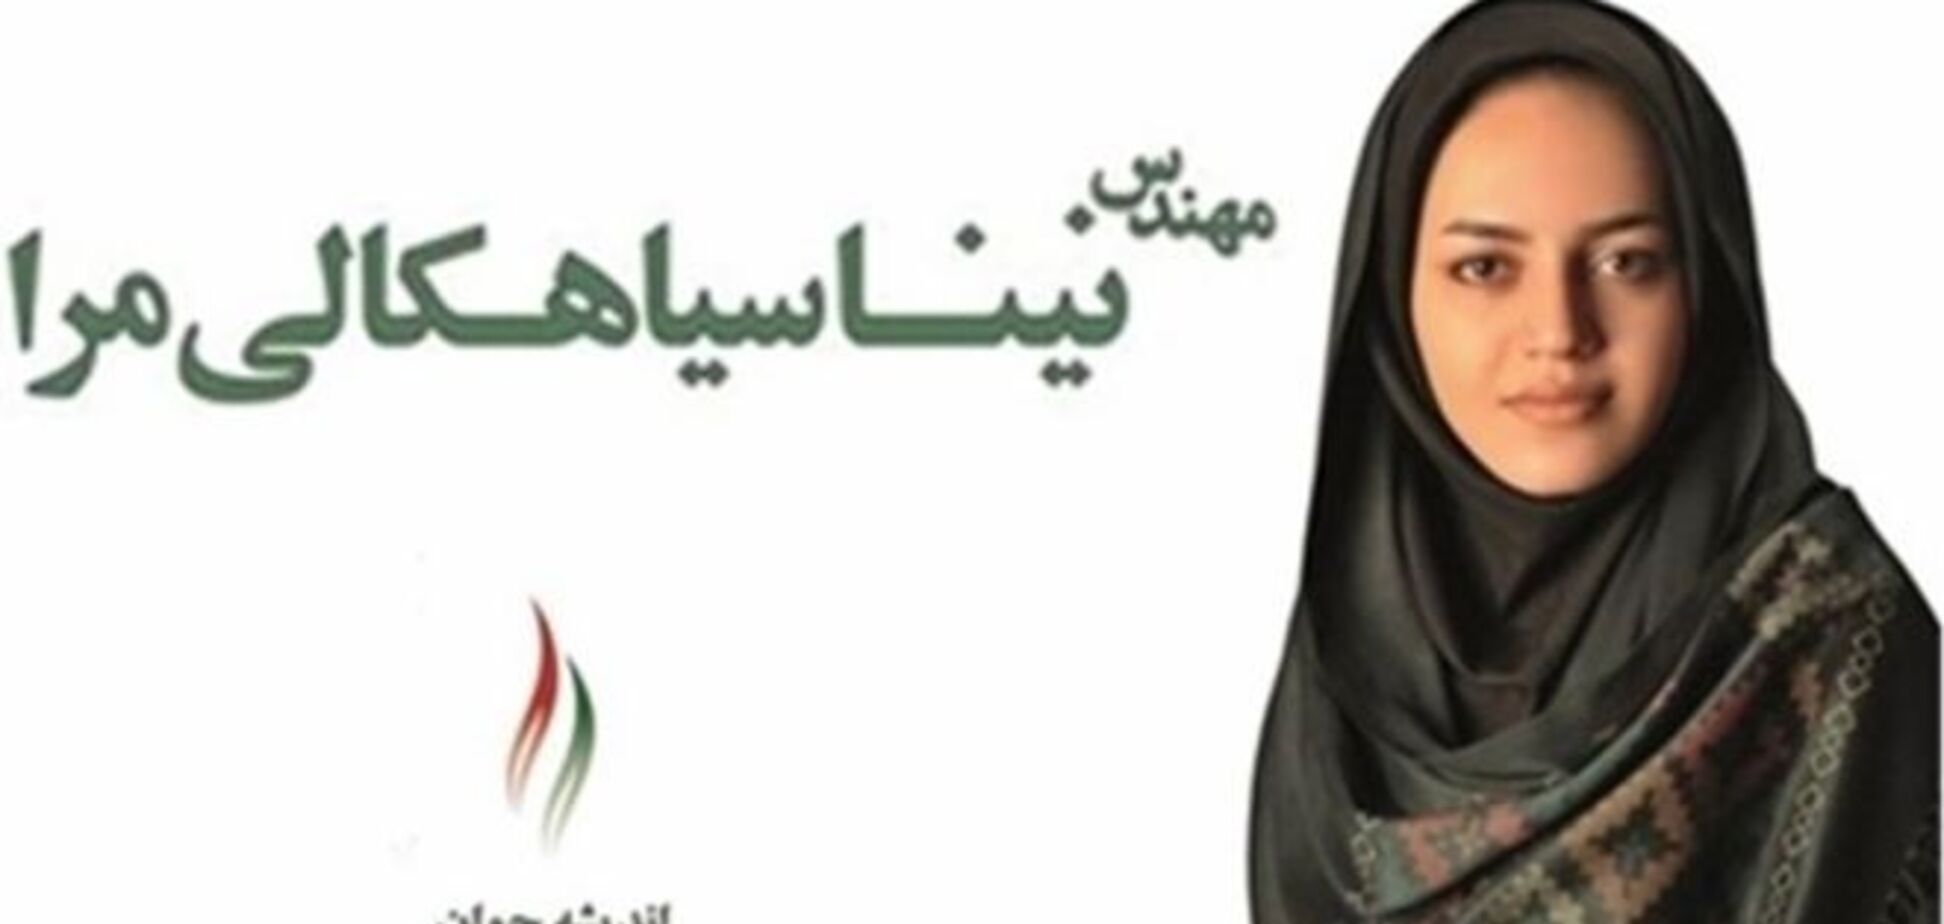 Іранської дівчині заборонили брати участь у госдеятельності за краси